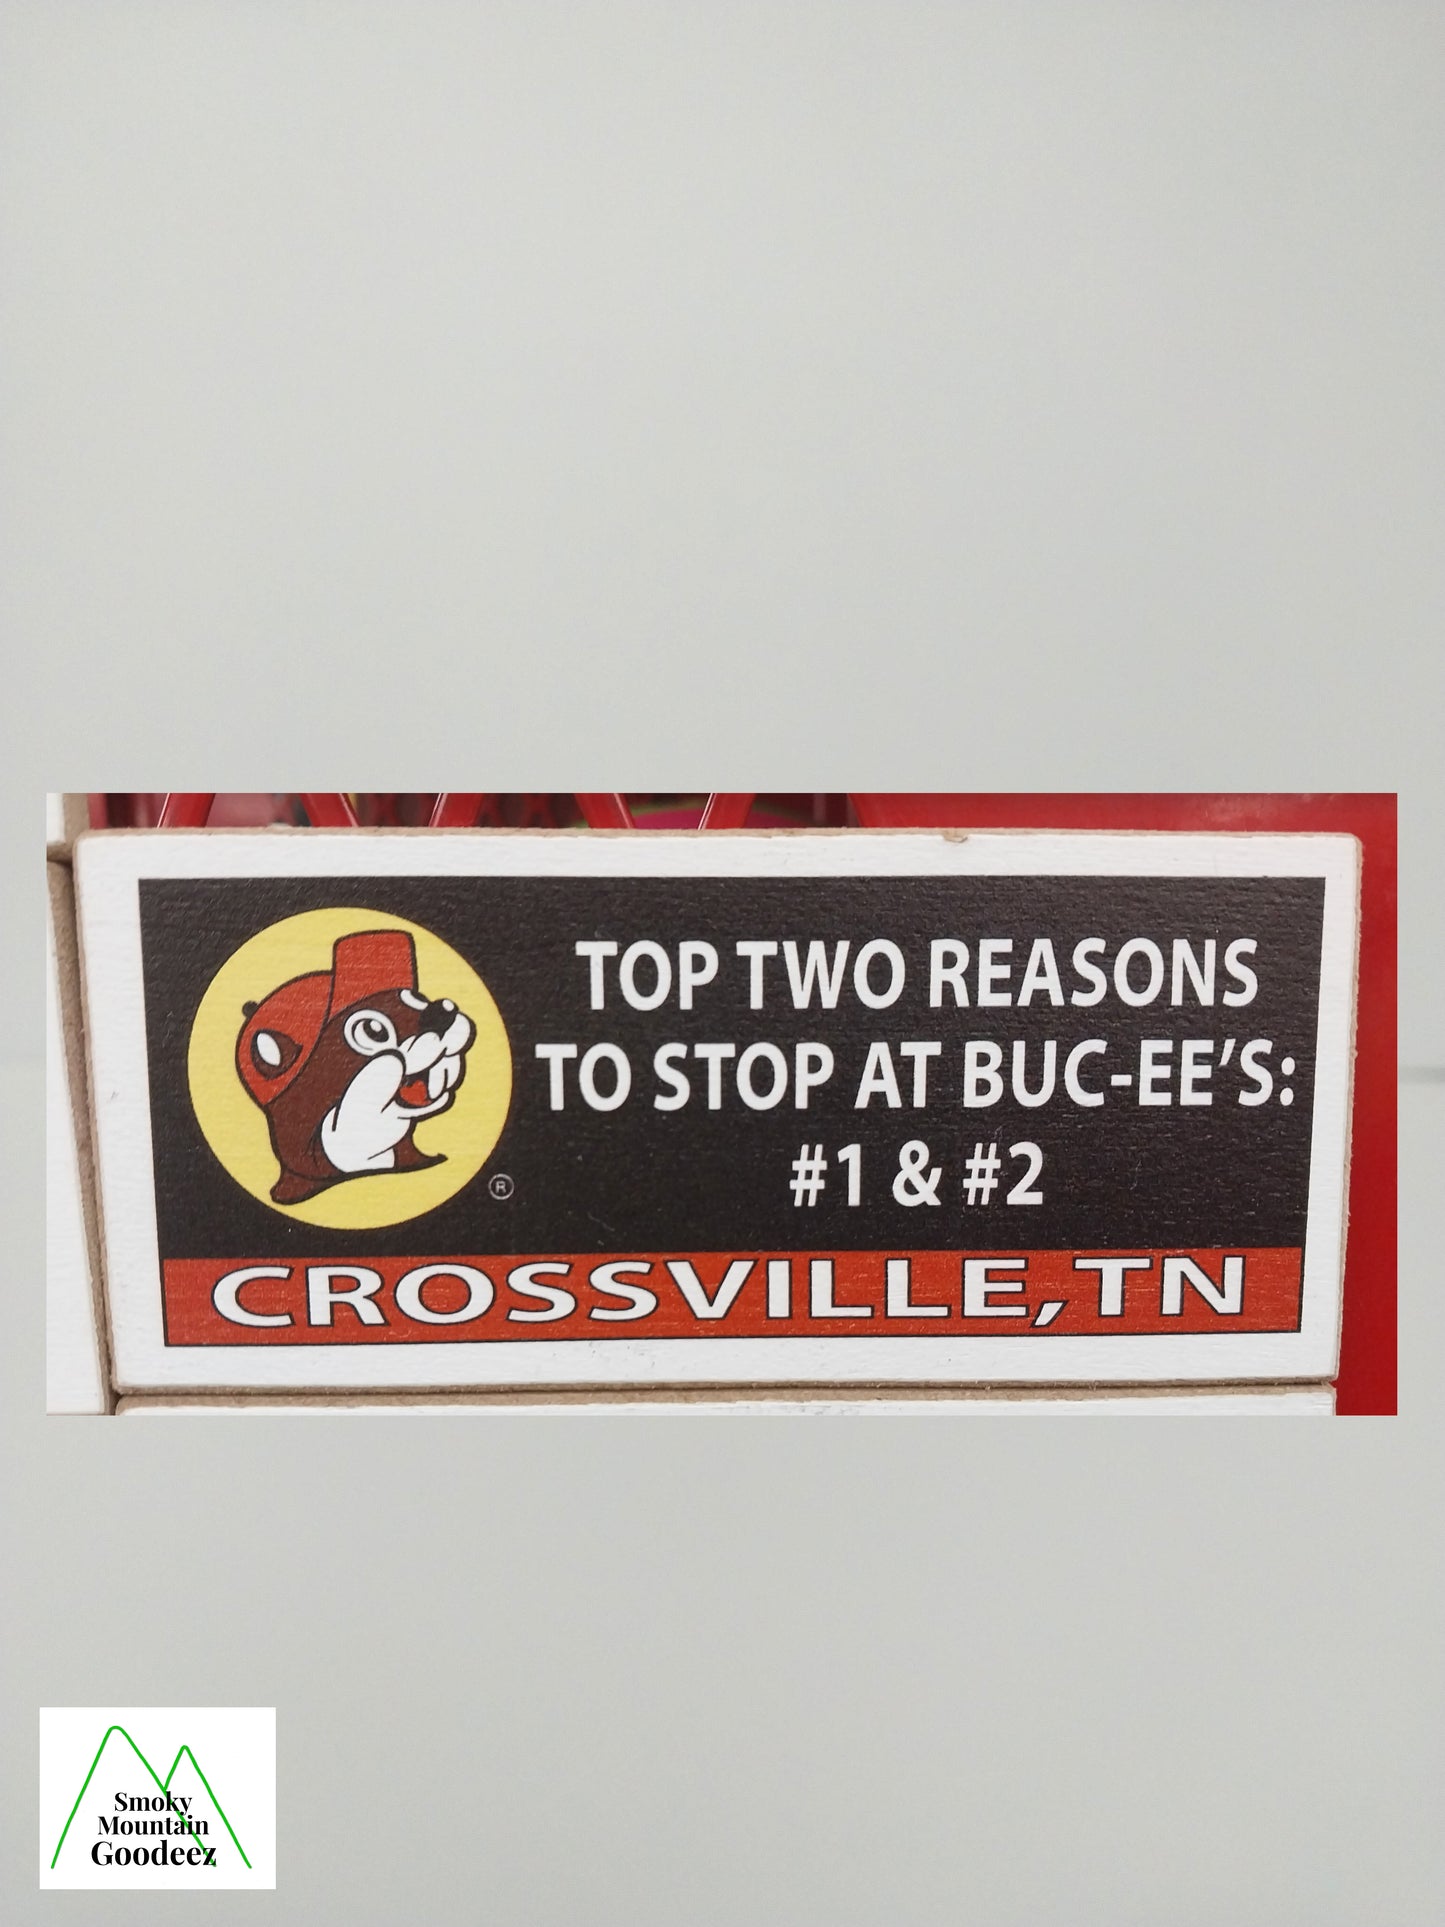 Buc-ee's Magnet Billboard Sign - "Top Two Reasons.....Crossville, TN" - 1 of 6 Varieties